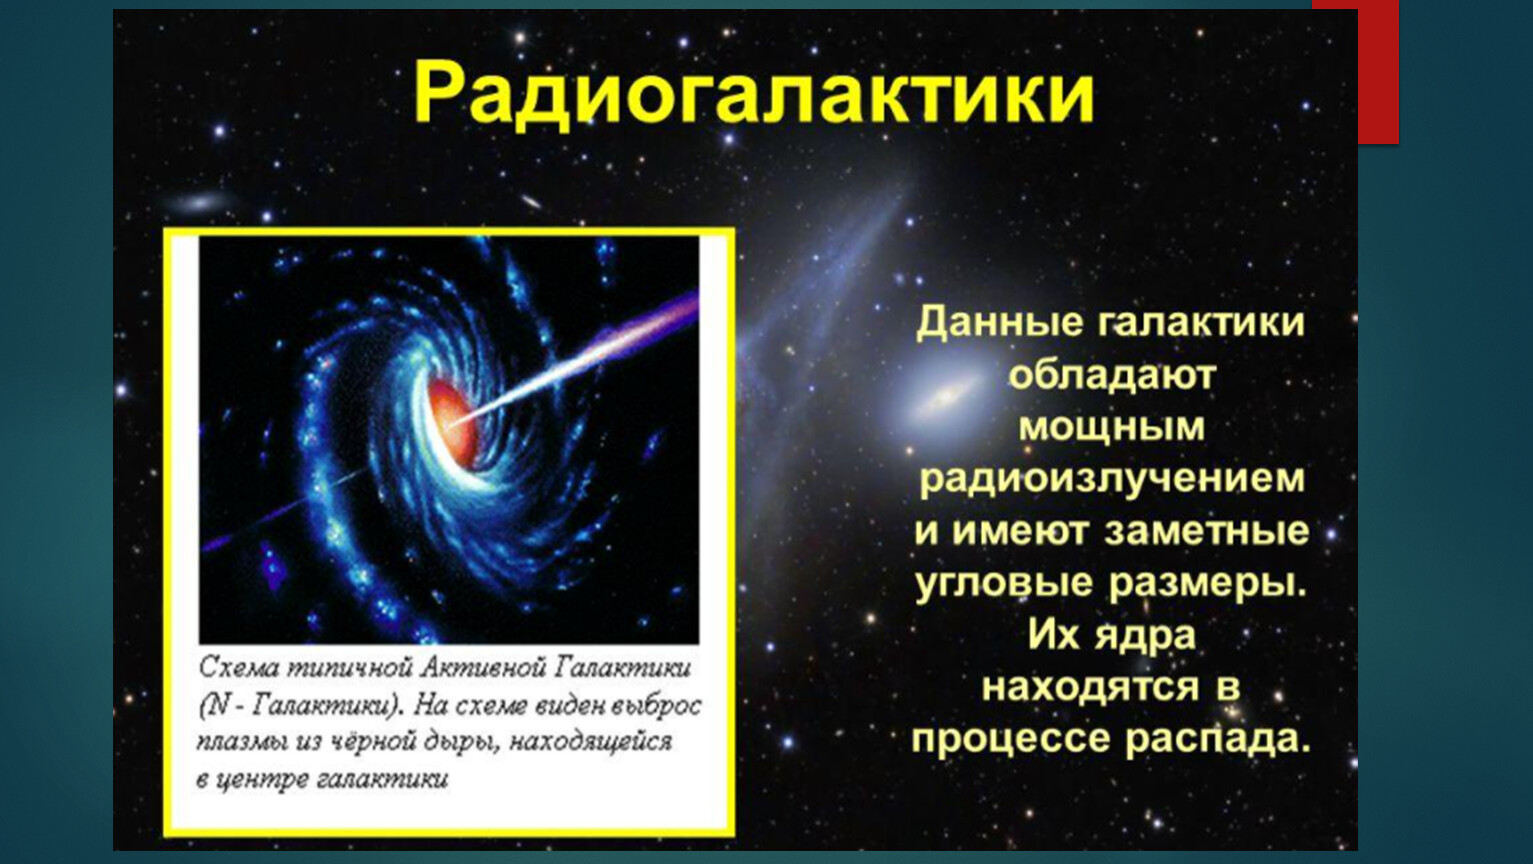 Какие источники радиоизлучения известны в нашей галактике. Радиогалактики презентация. Радиоизлучение Галактики. Галактика презентация. Радиогалактика это в астрономии.